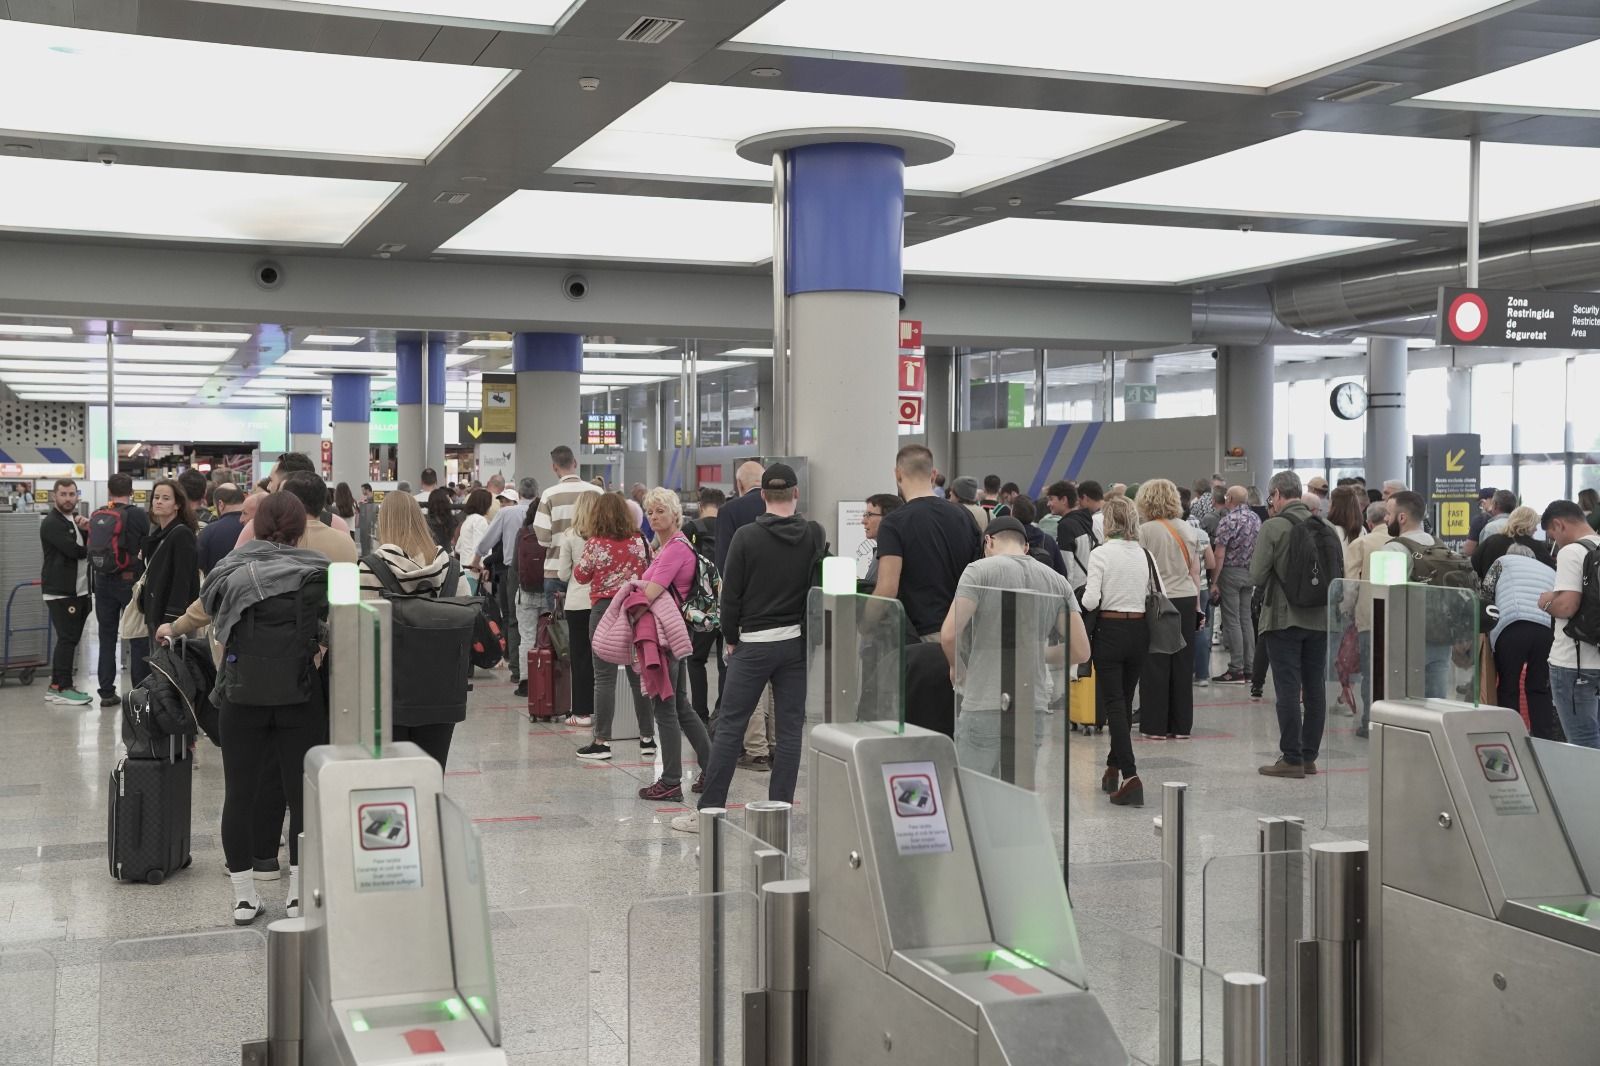 Colapso en los filtros de seguridad del aeropuerto de Palma con una hora de espera y cientos de personas atrapadas